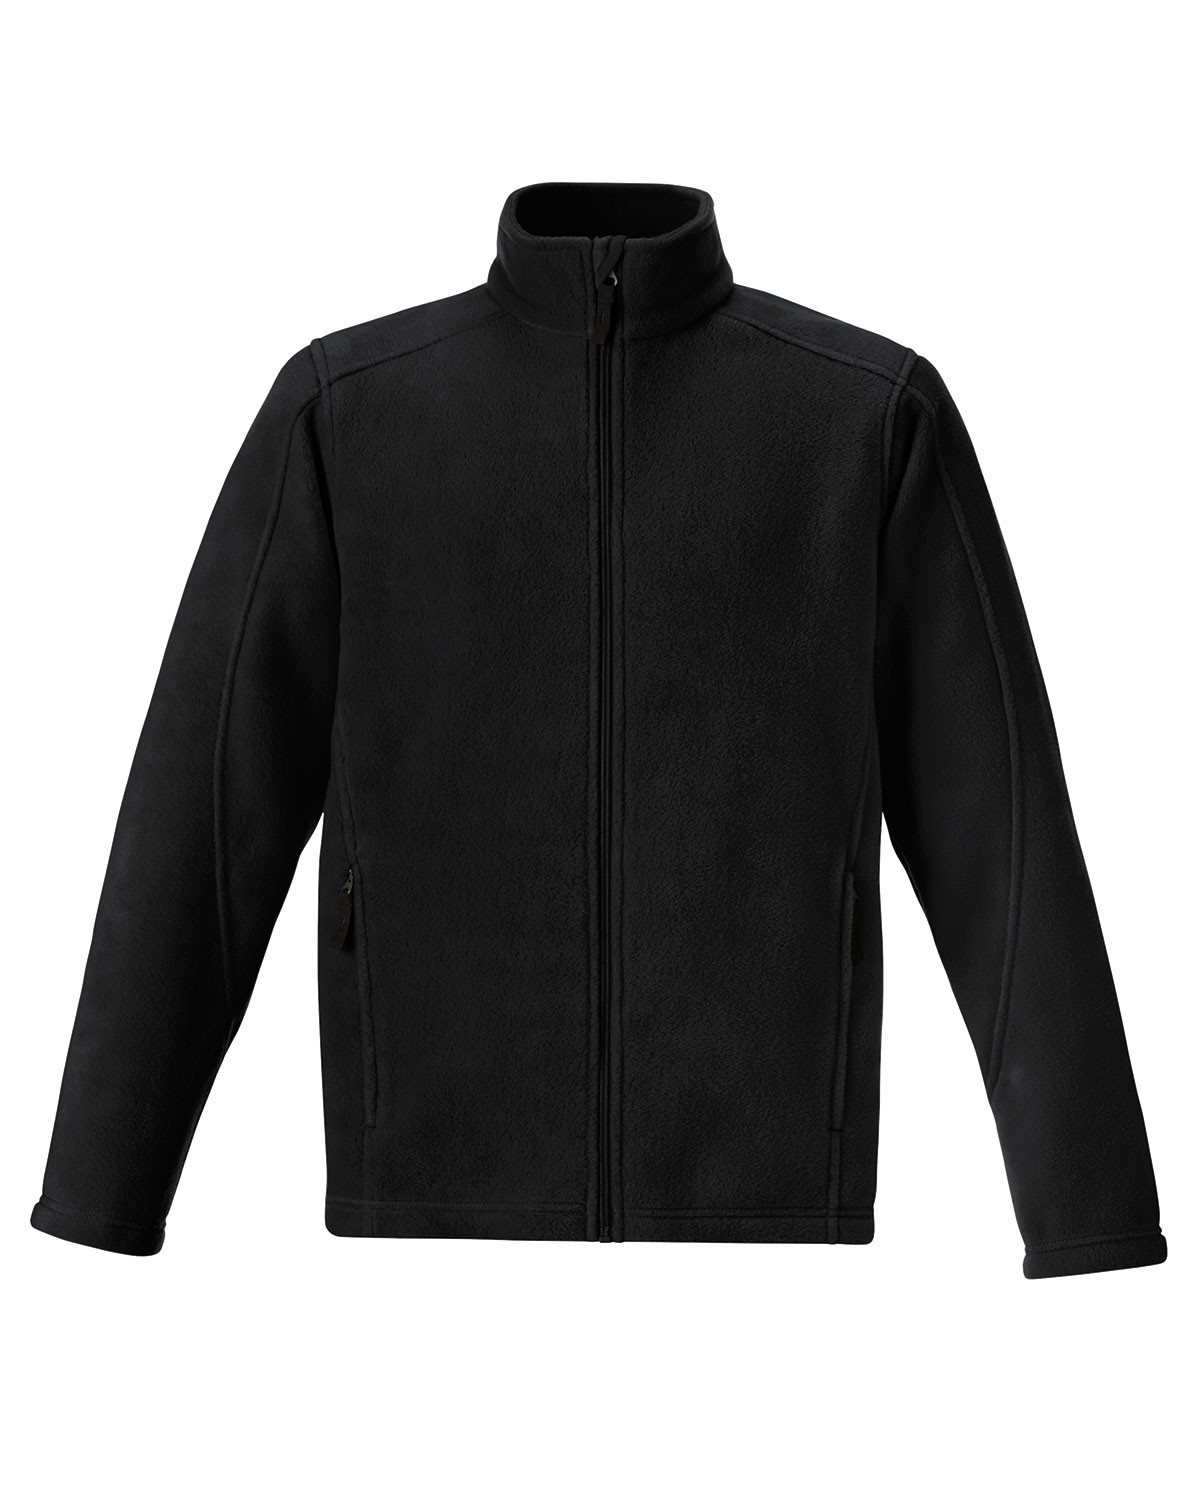 Core 365 88190T - Men's Tall Journey Fleece Jacket $25.31 - Outerwear